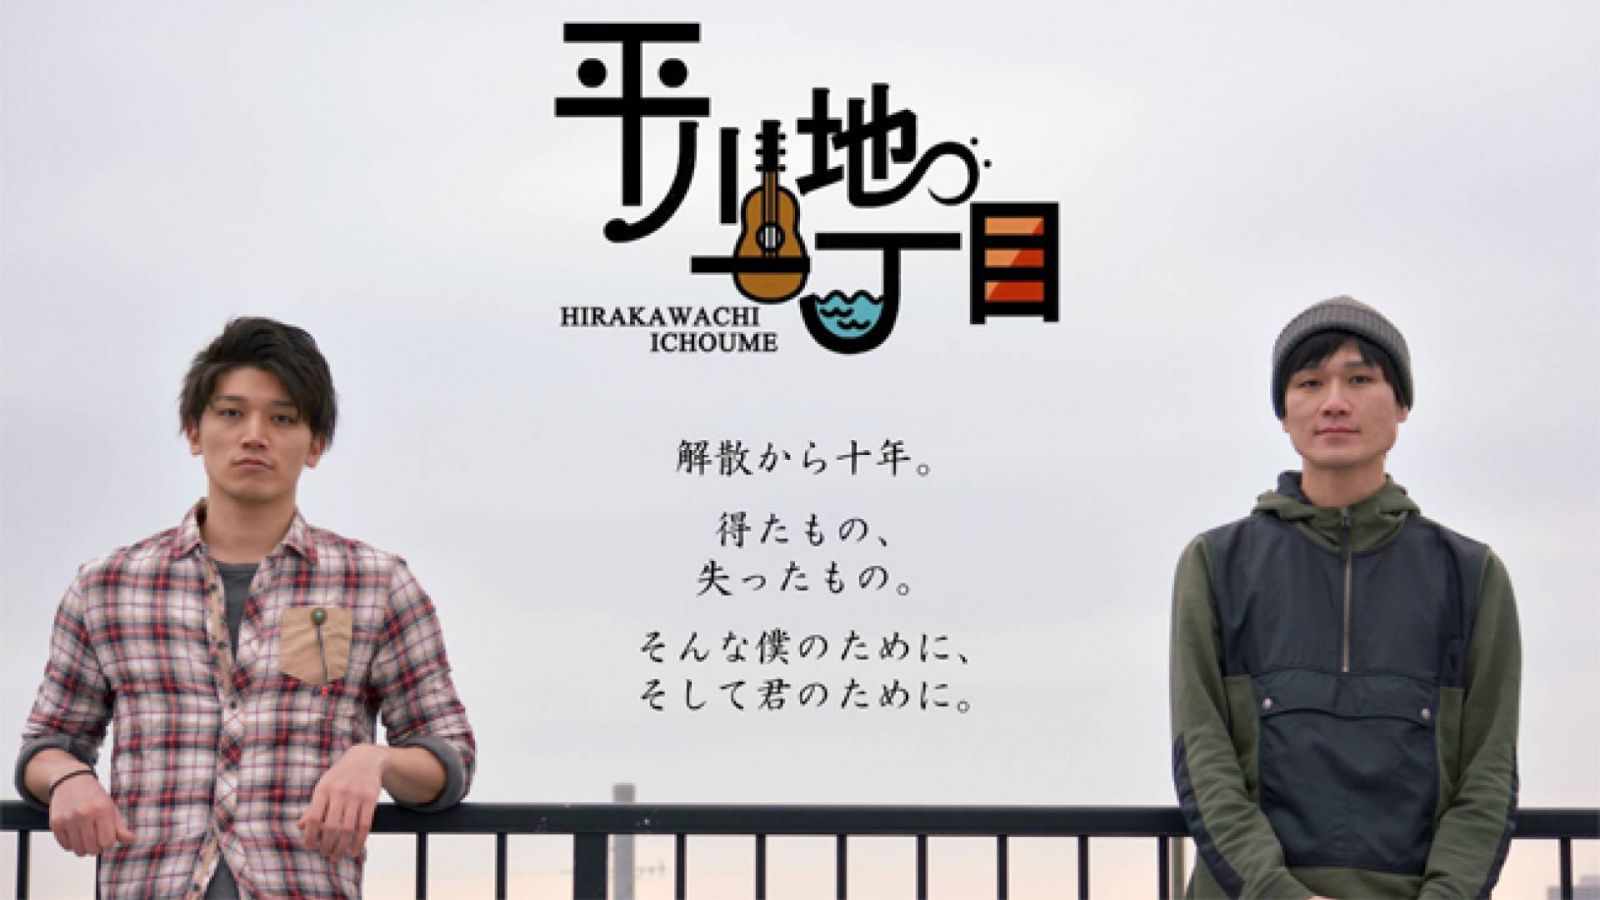 Hirakawachi 1-chome Announce Reunion Tour © Hirakawachi Ichoume. All rights reserved